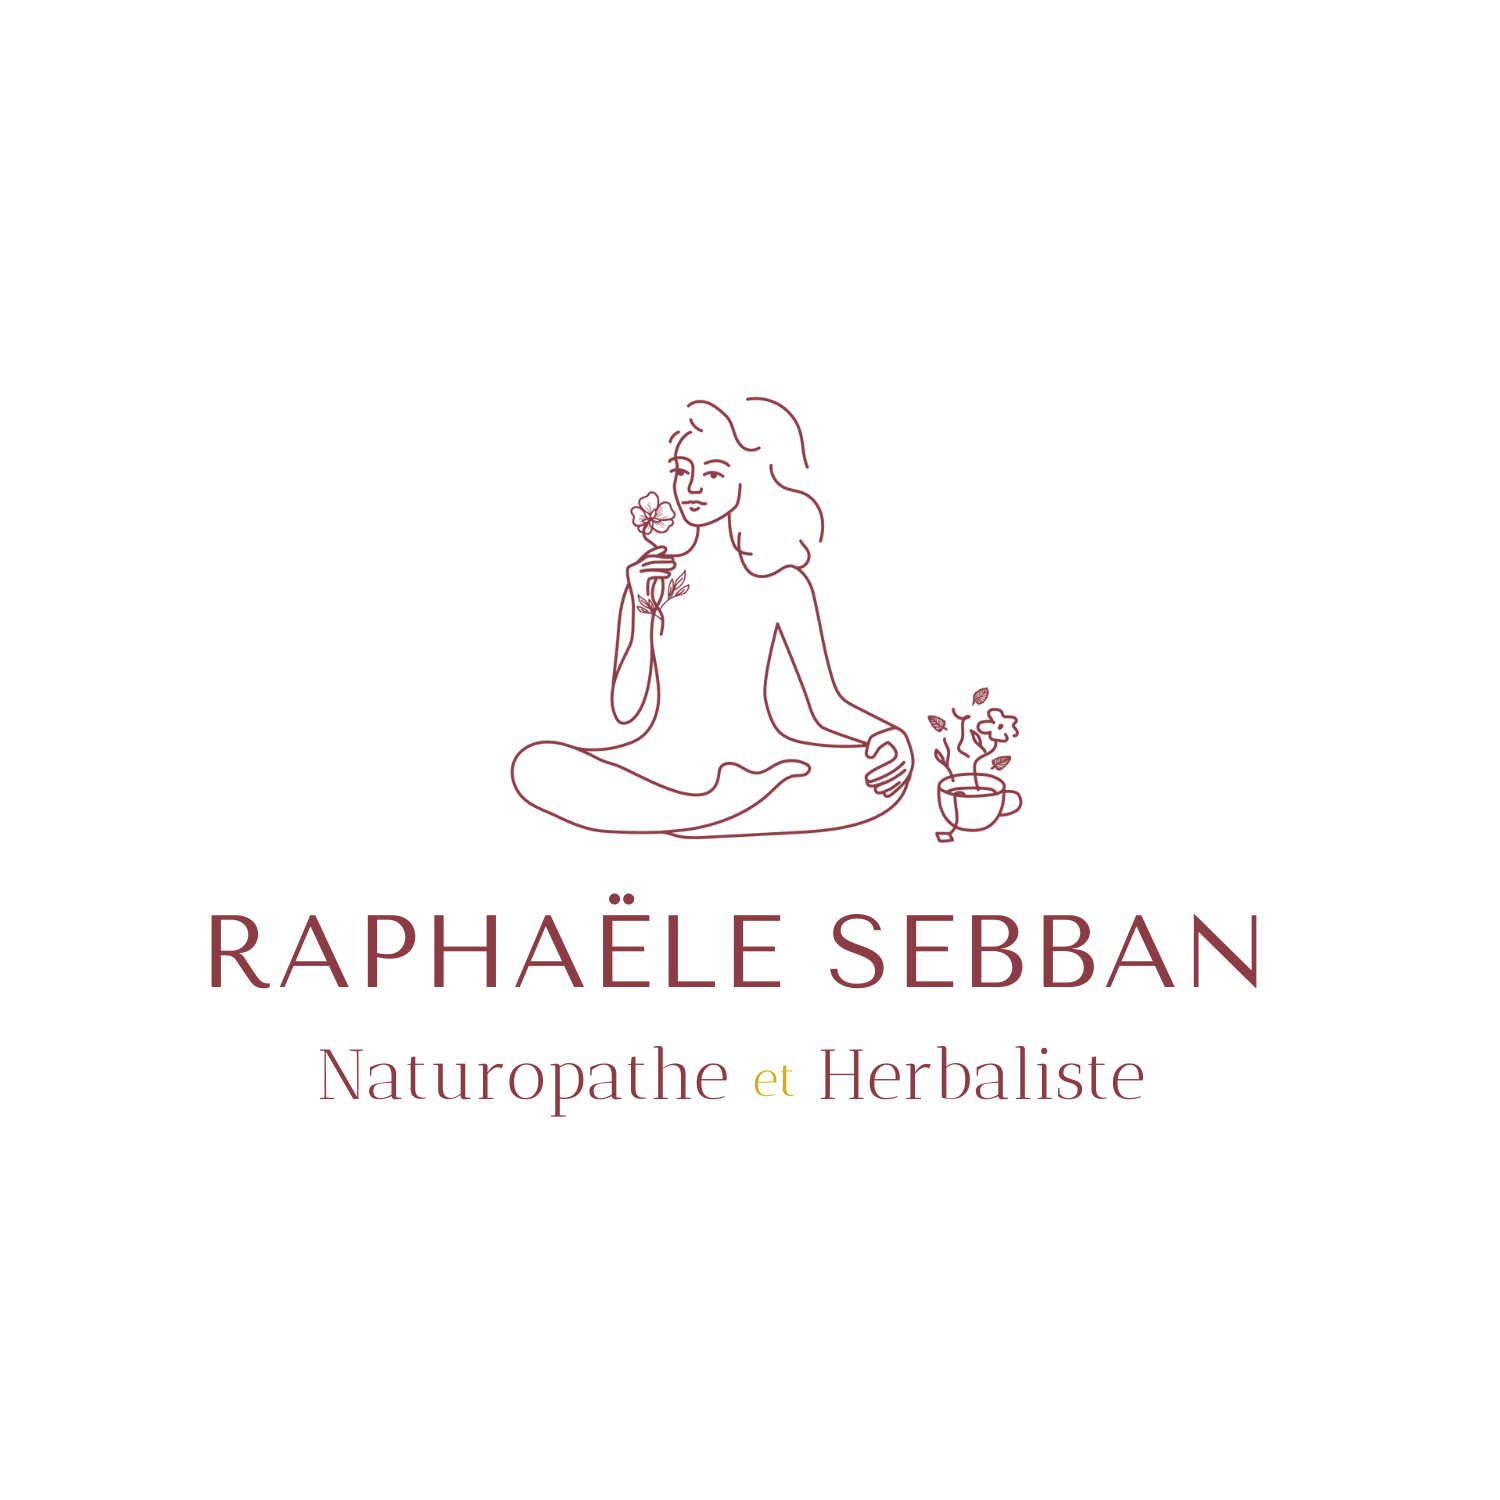 Raphaële Sebban Naturopathe